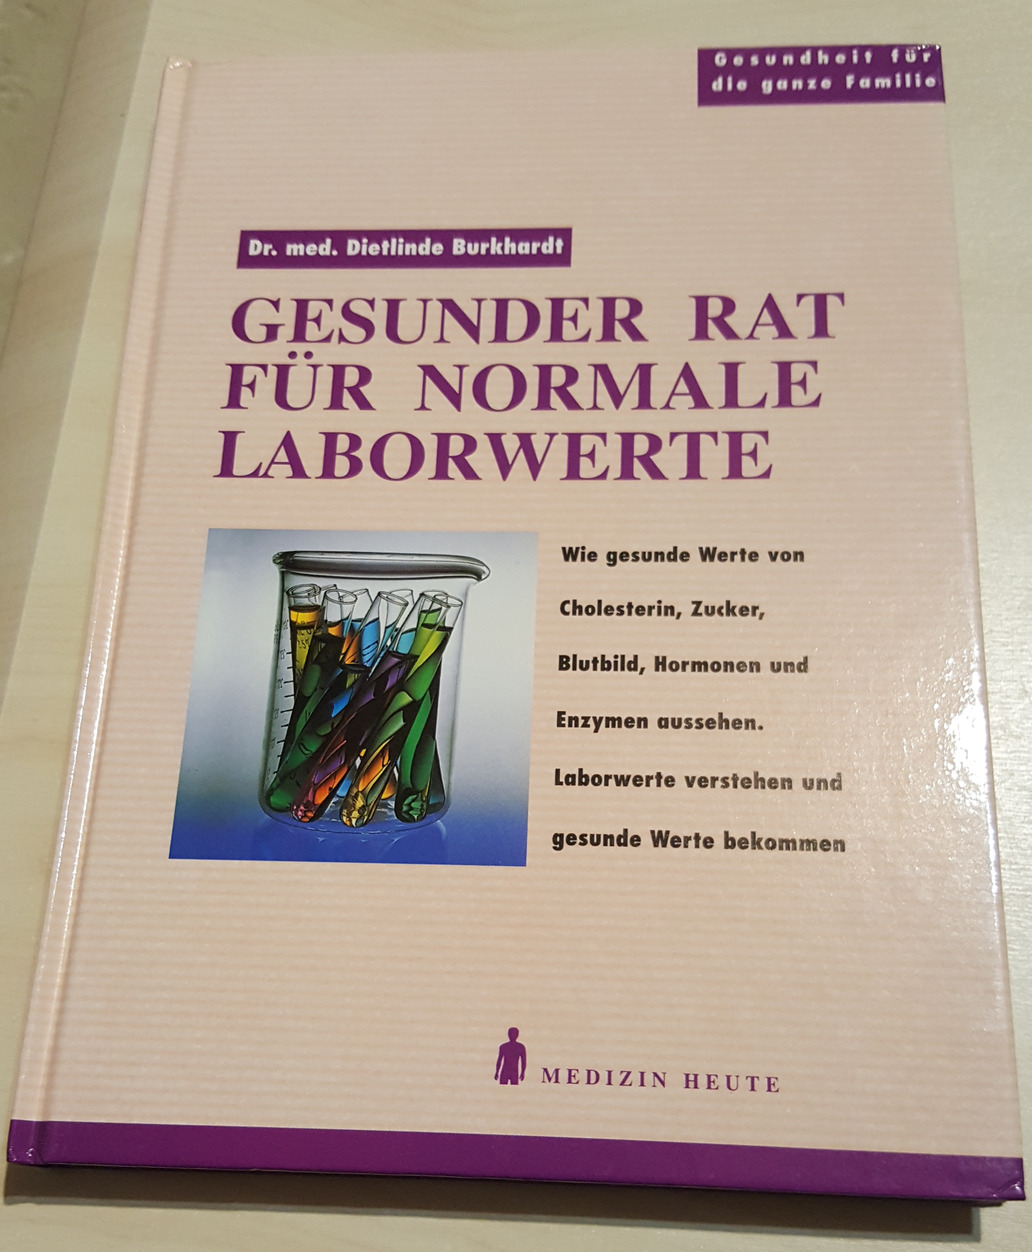 GESUNDER RAT FÜR NORMALE LABORWERTE